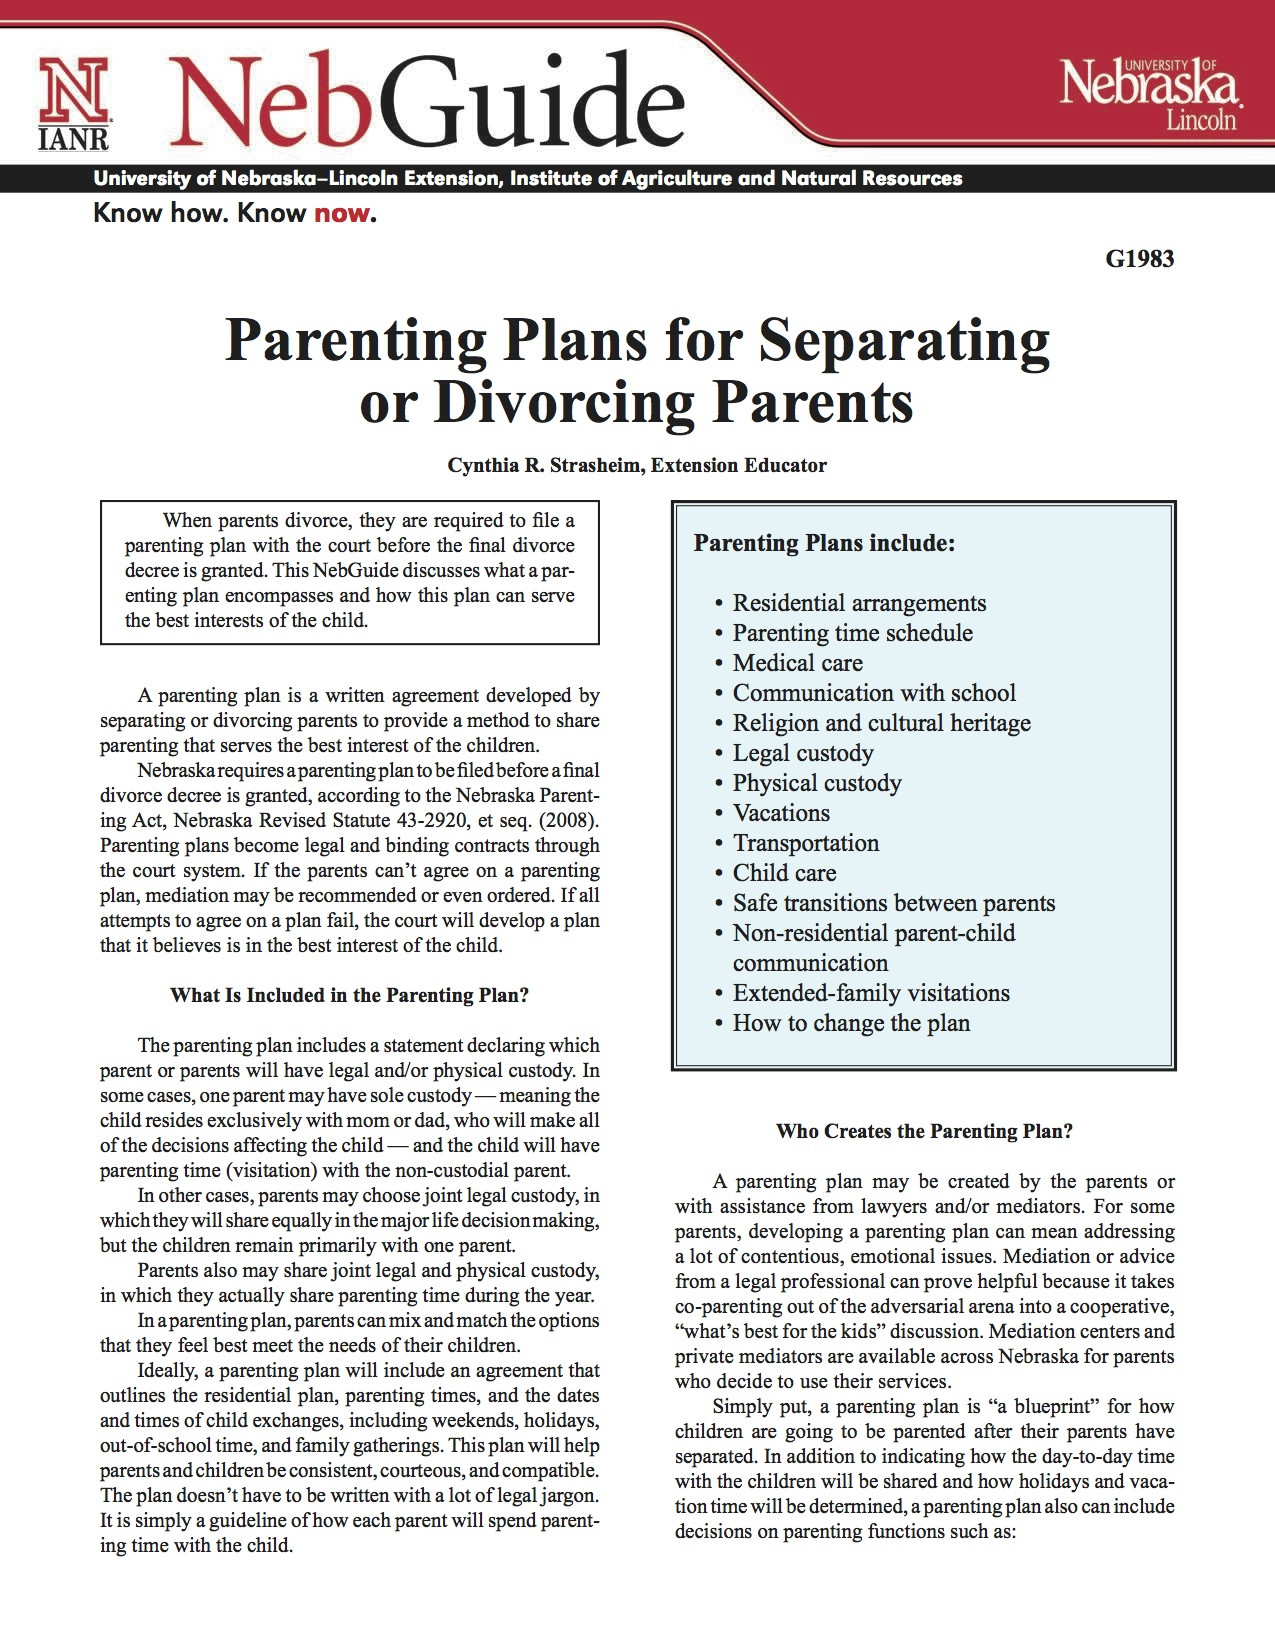 Parenting Plans for Separating or Divorcing Parents 